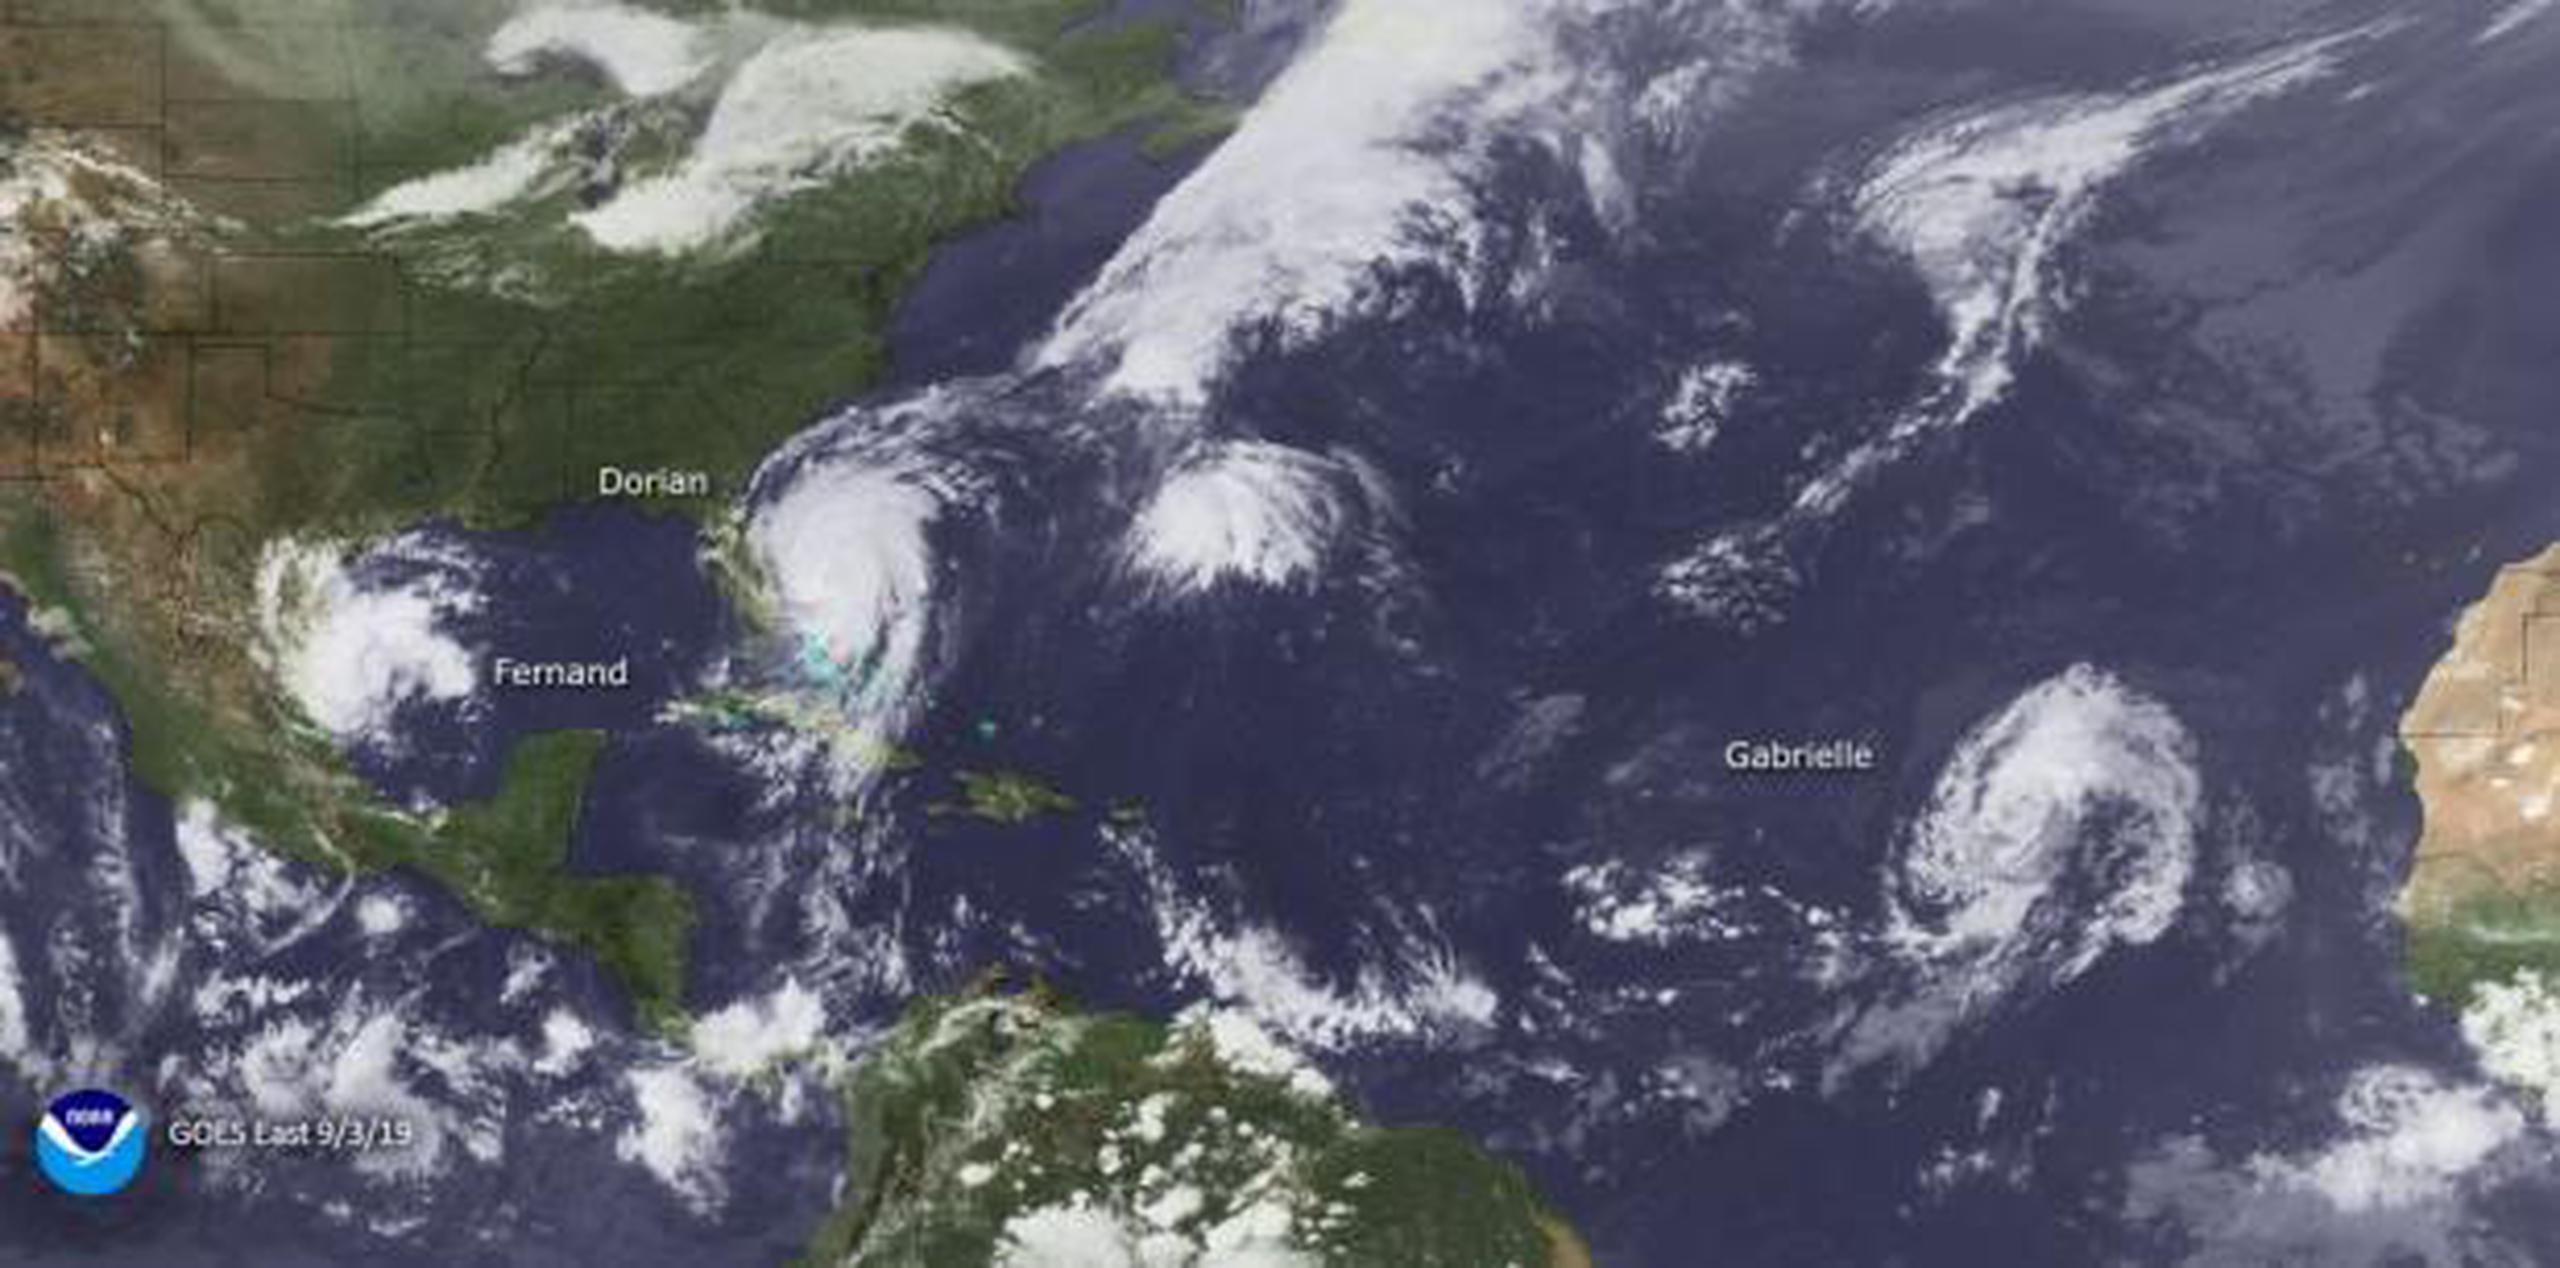 Estos tres sistemas, Fernand, Dorian y Gabrielle, estuvieron activos a la misma vez en septiembre pasado. (NOAA)